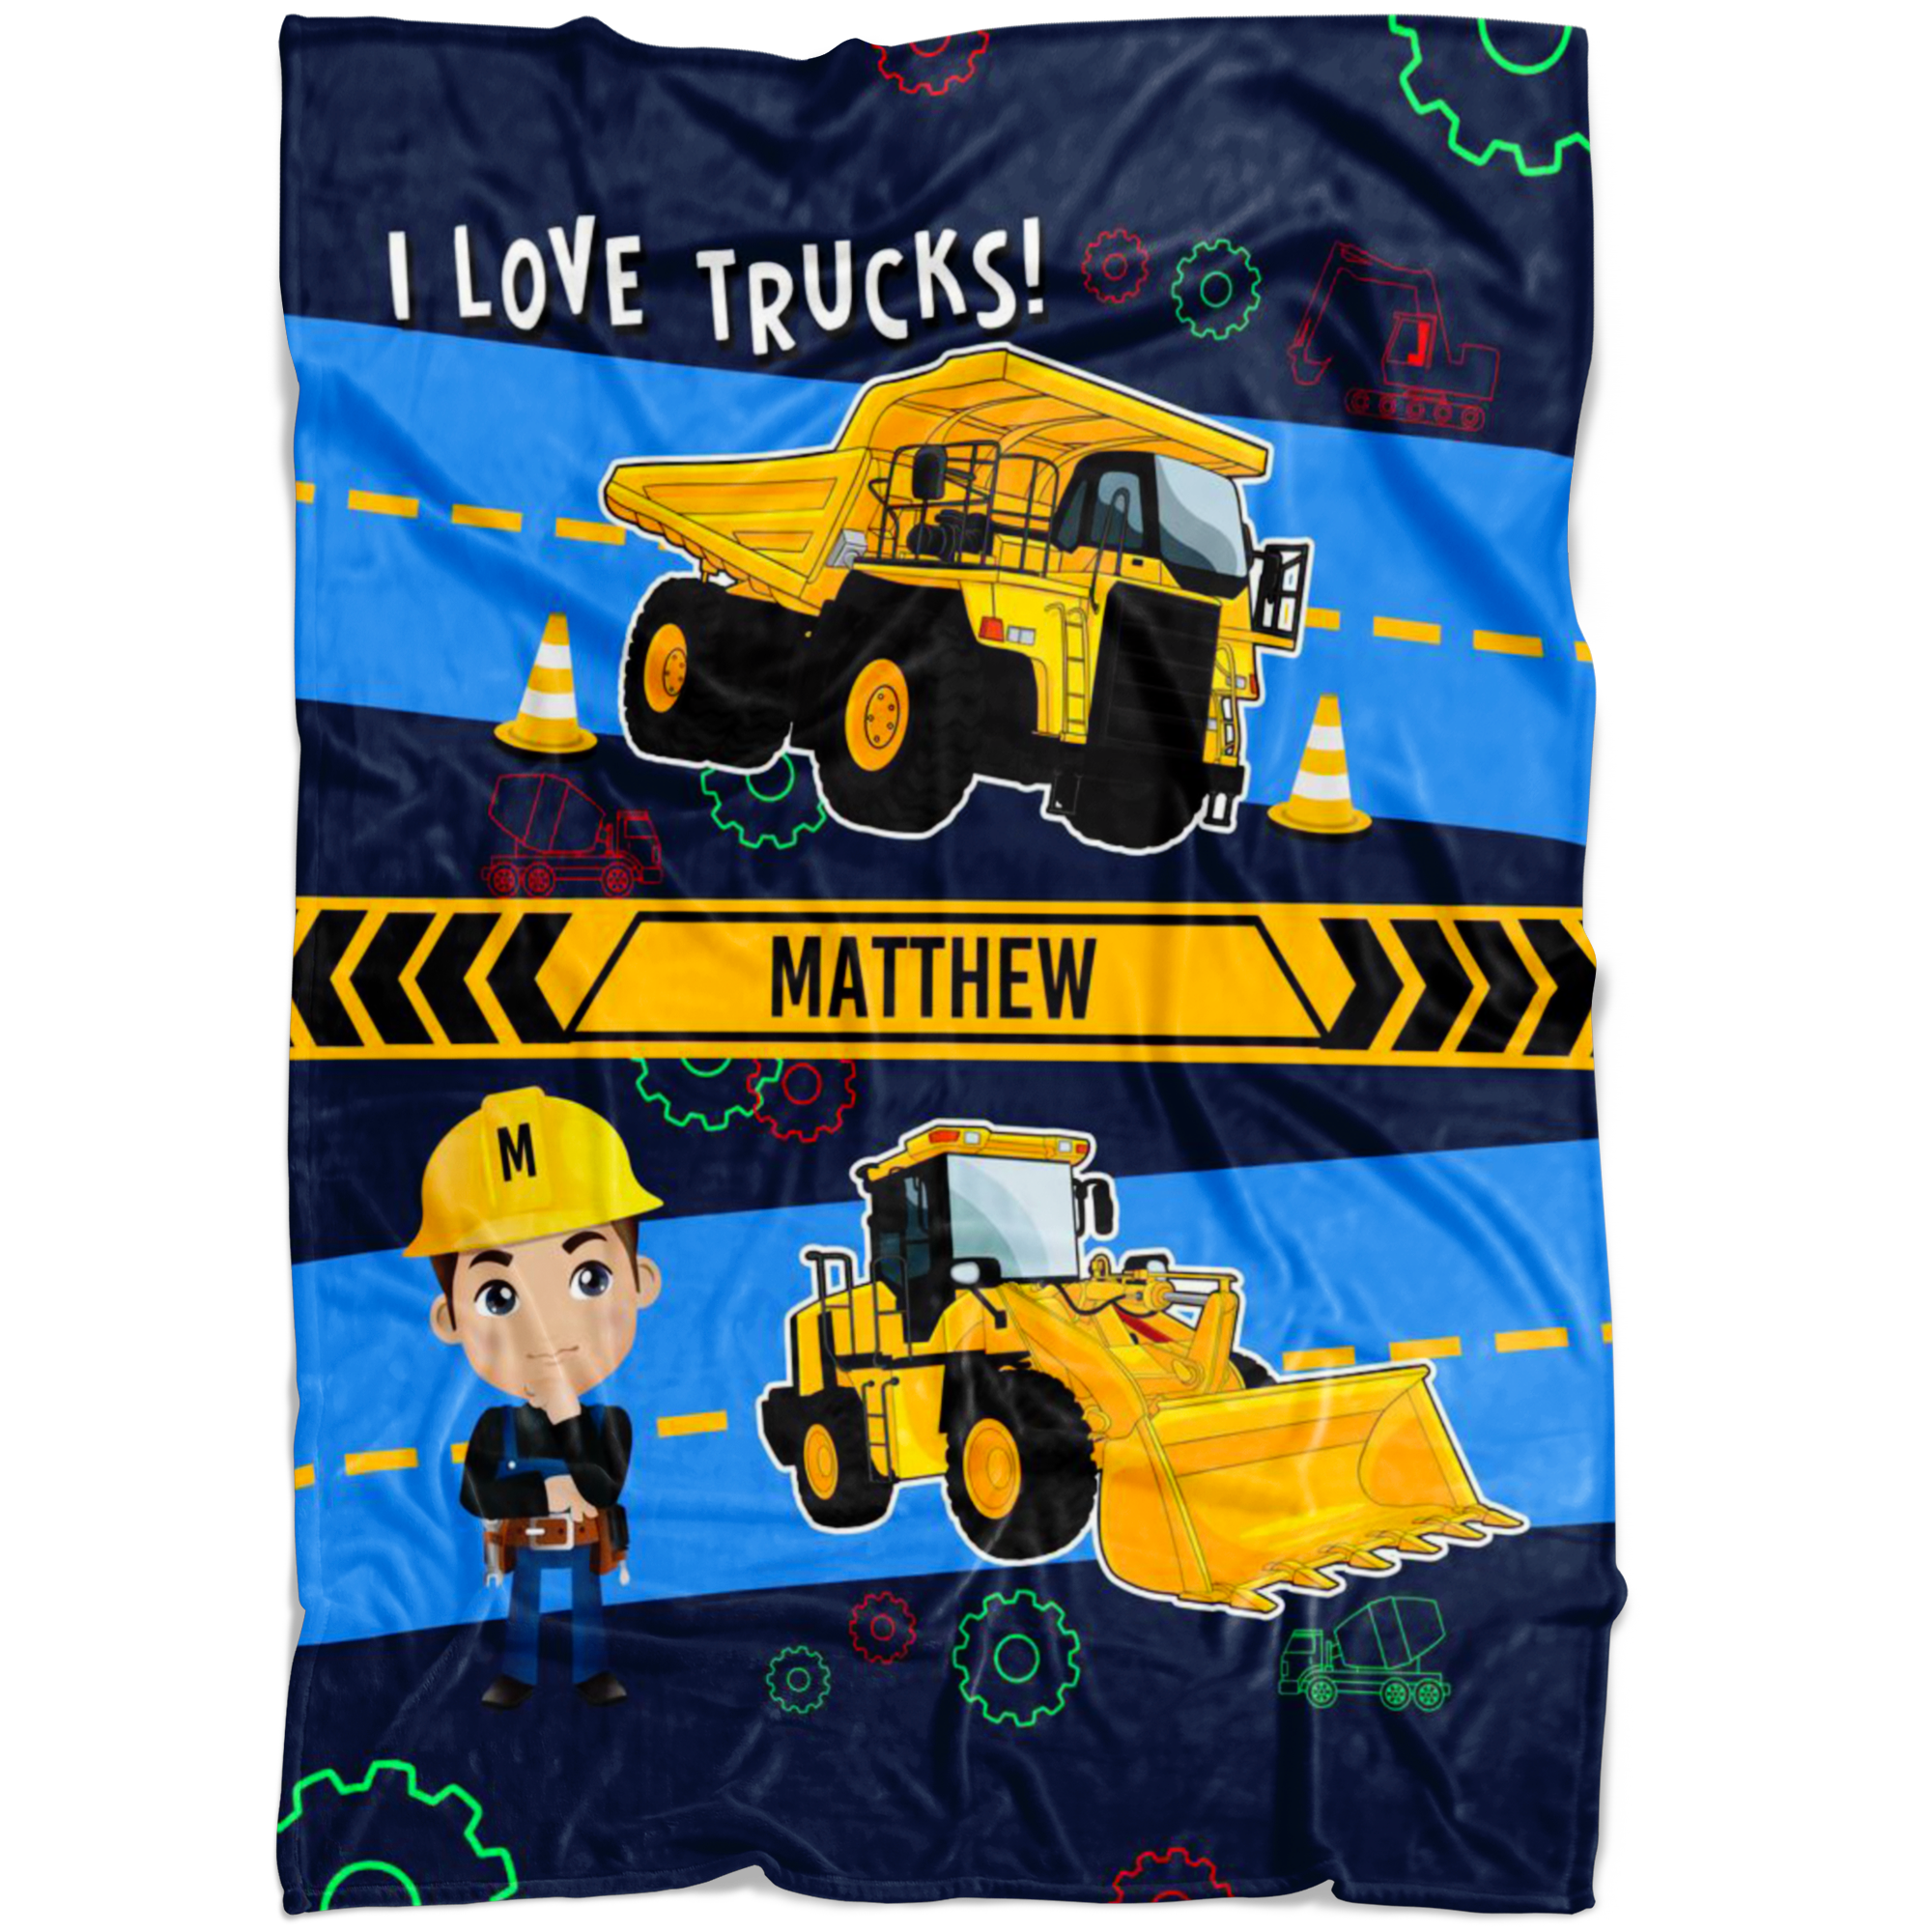 Personalized Name Monster Truck Blanket for Boys & Girls, Childrens Blanket - Matthew